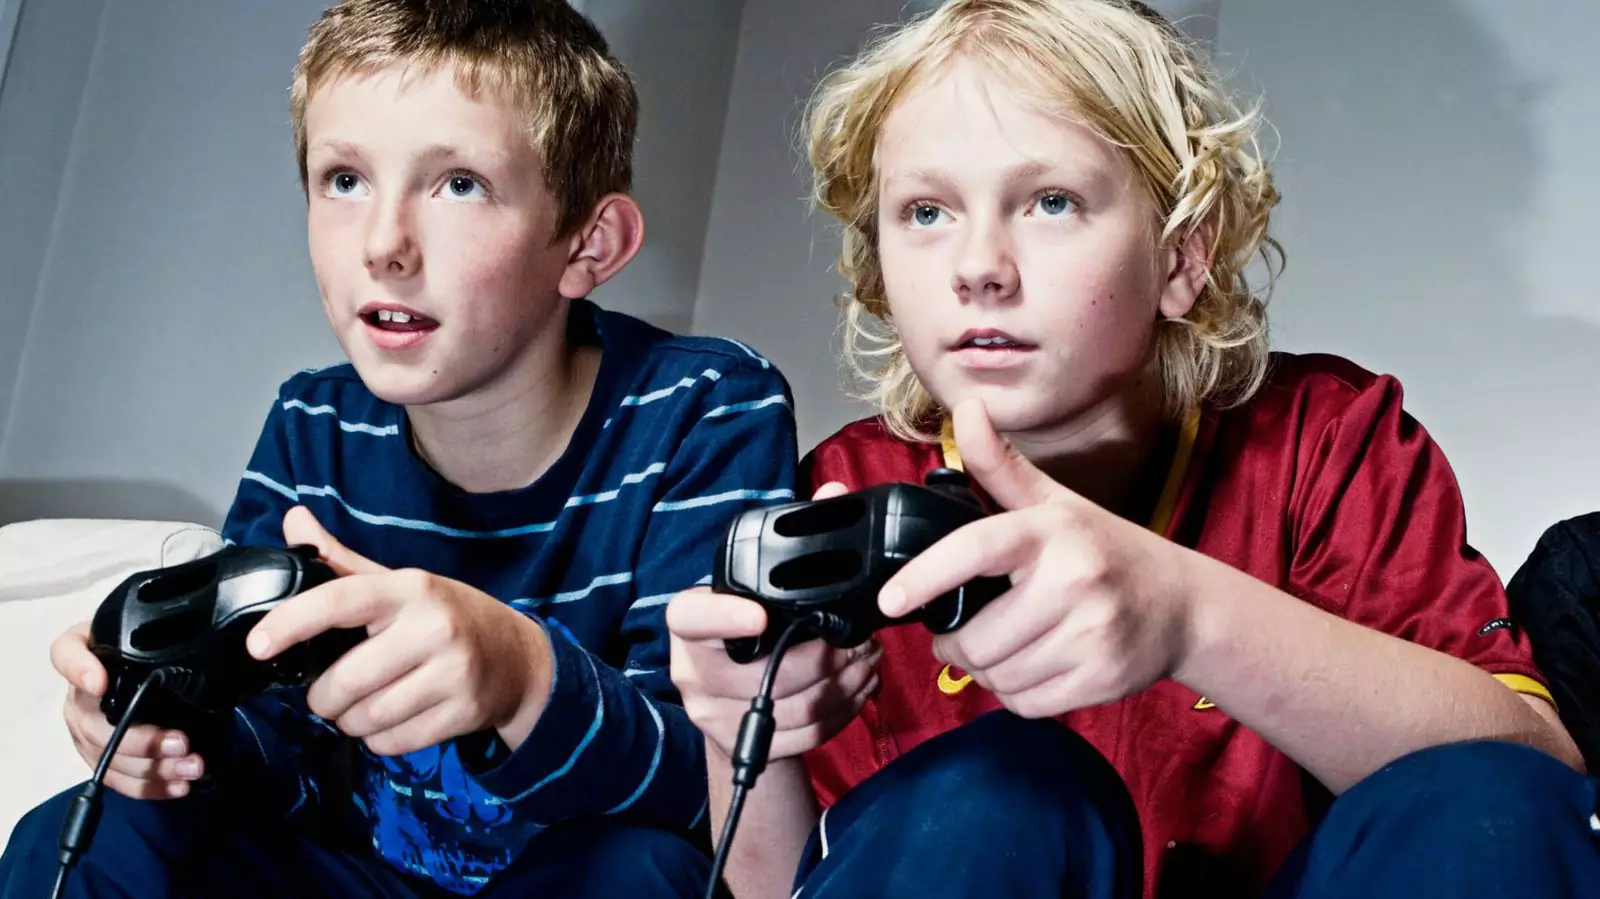 Дети, играющие в видеоигры хотя бы час в день, повышают свой интеллект быстрее сверстников.